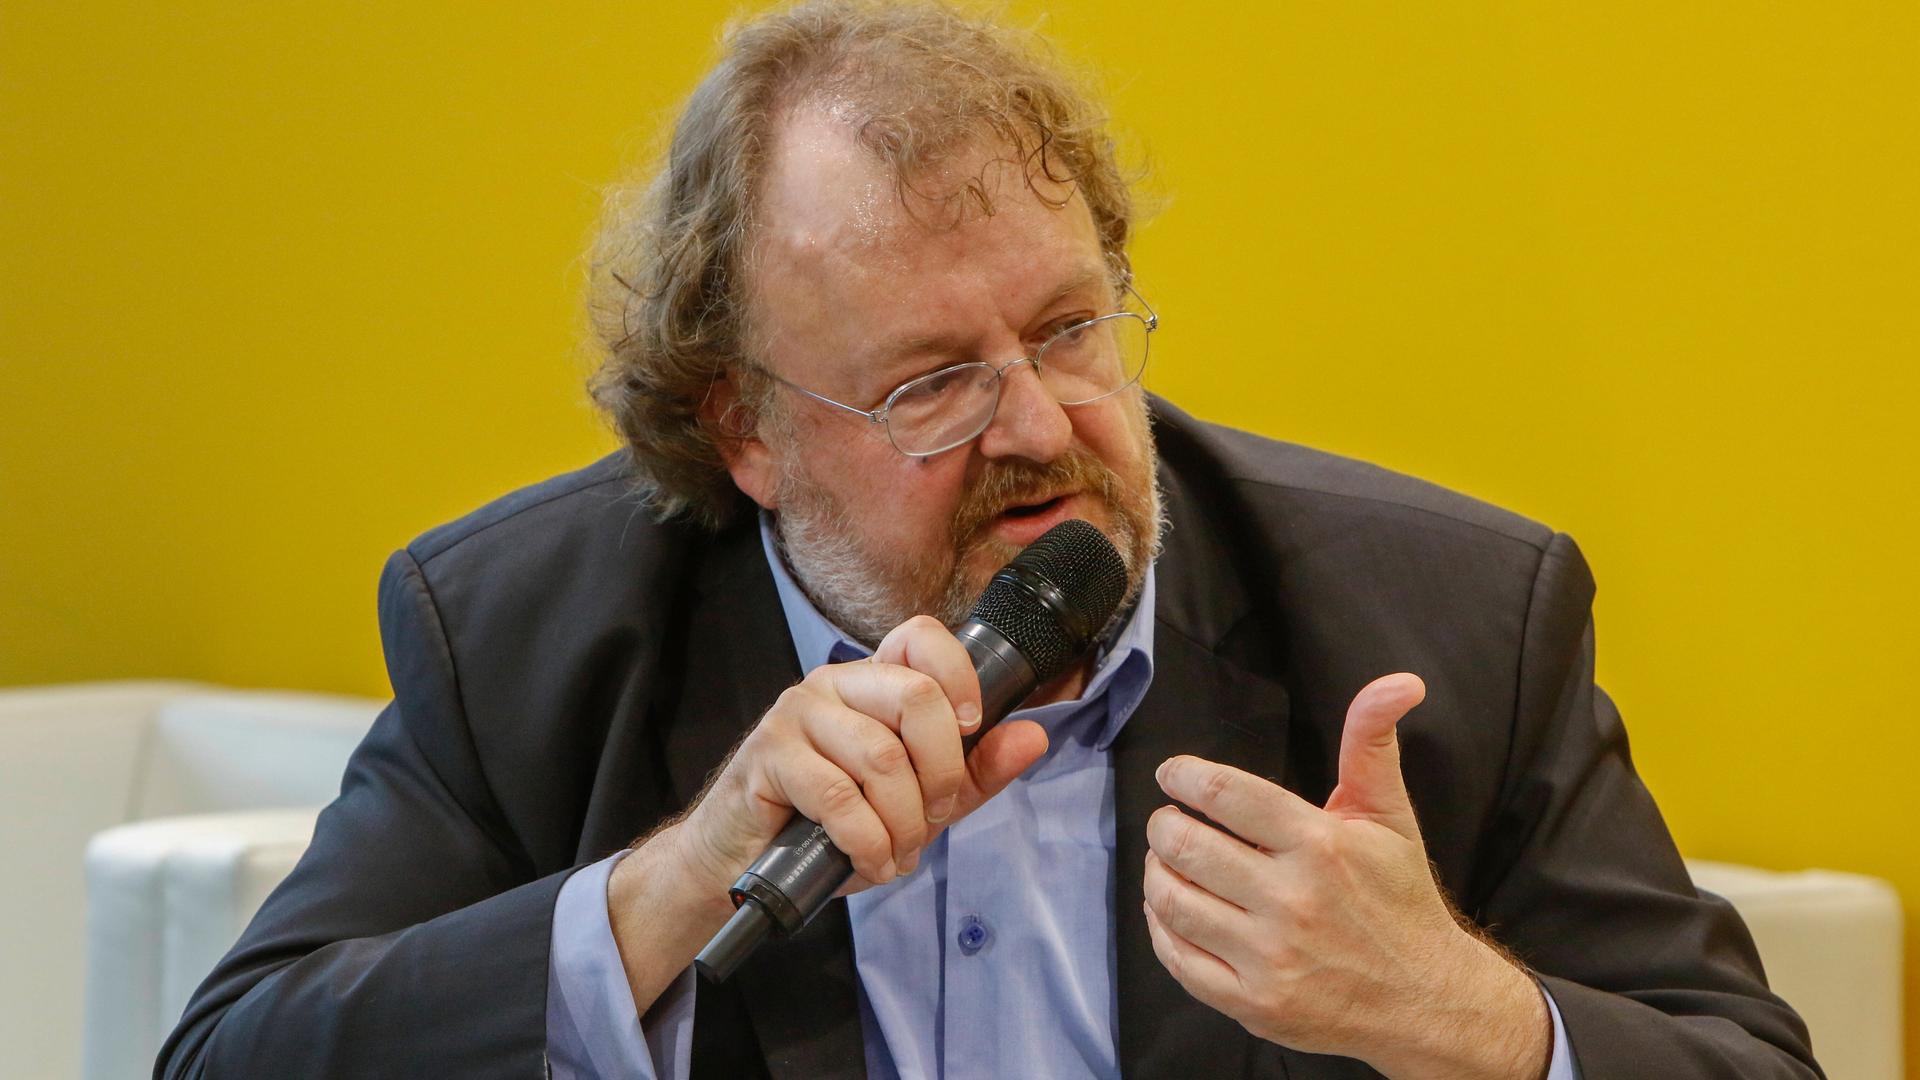 Der FAZ-Herausgeber Jürgen Kaube spricht 2019 auf der Frankfurter Buchmesse mit einem Mikrofon in der Hand.